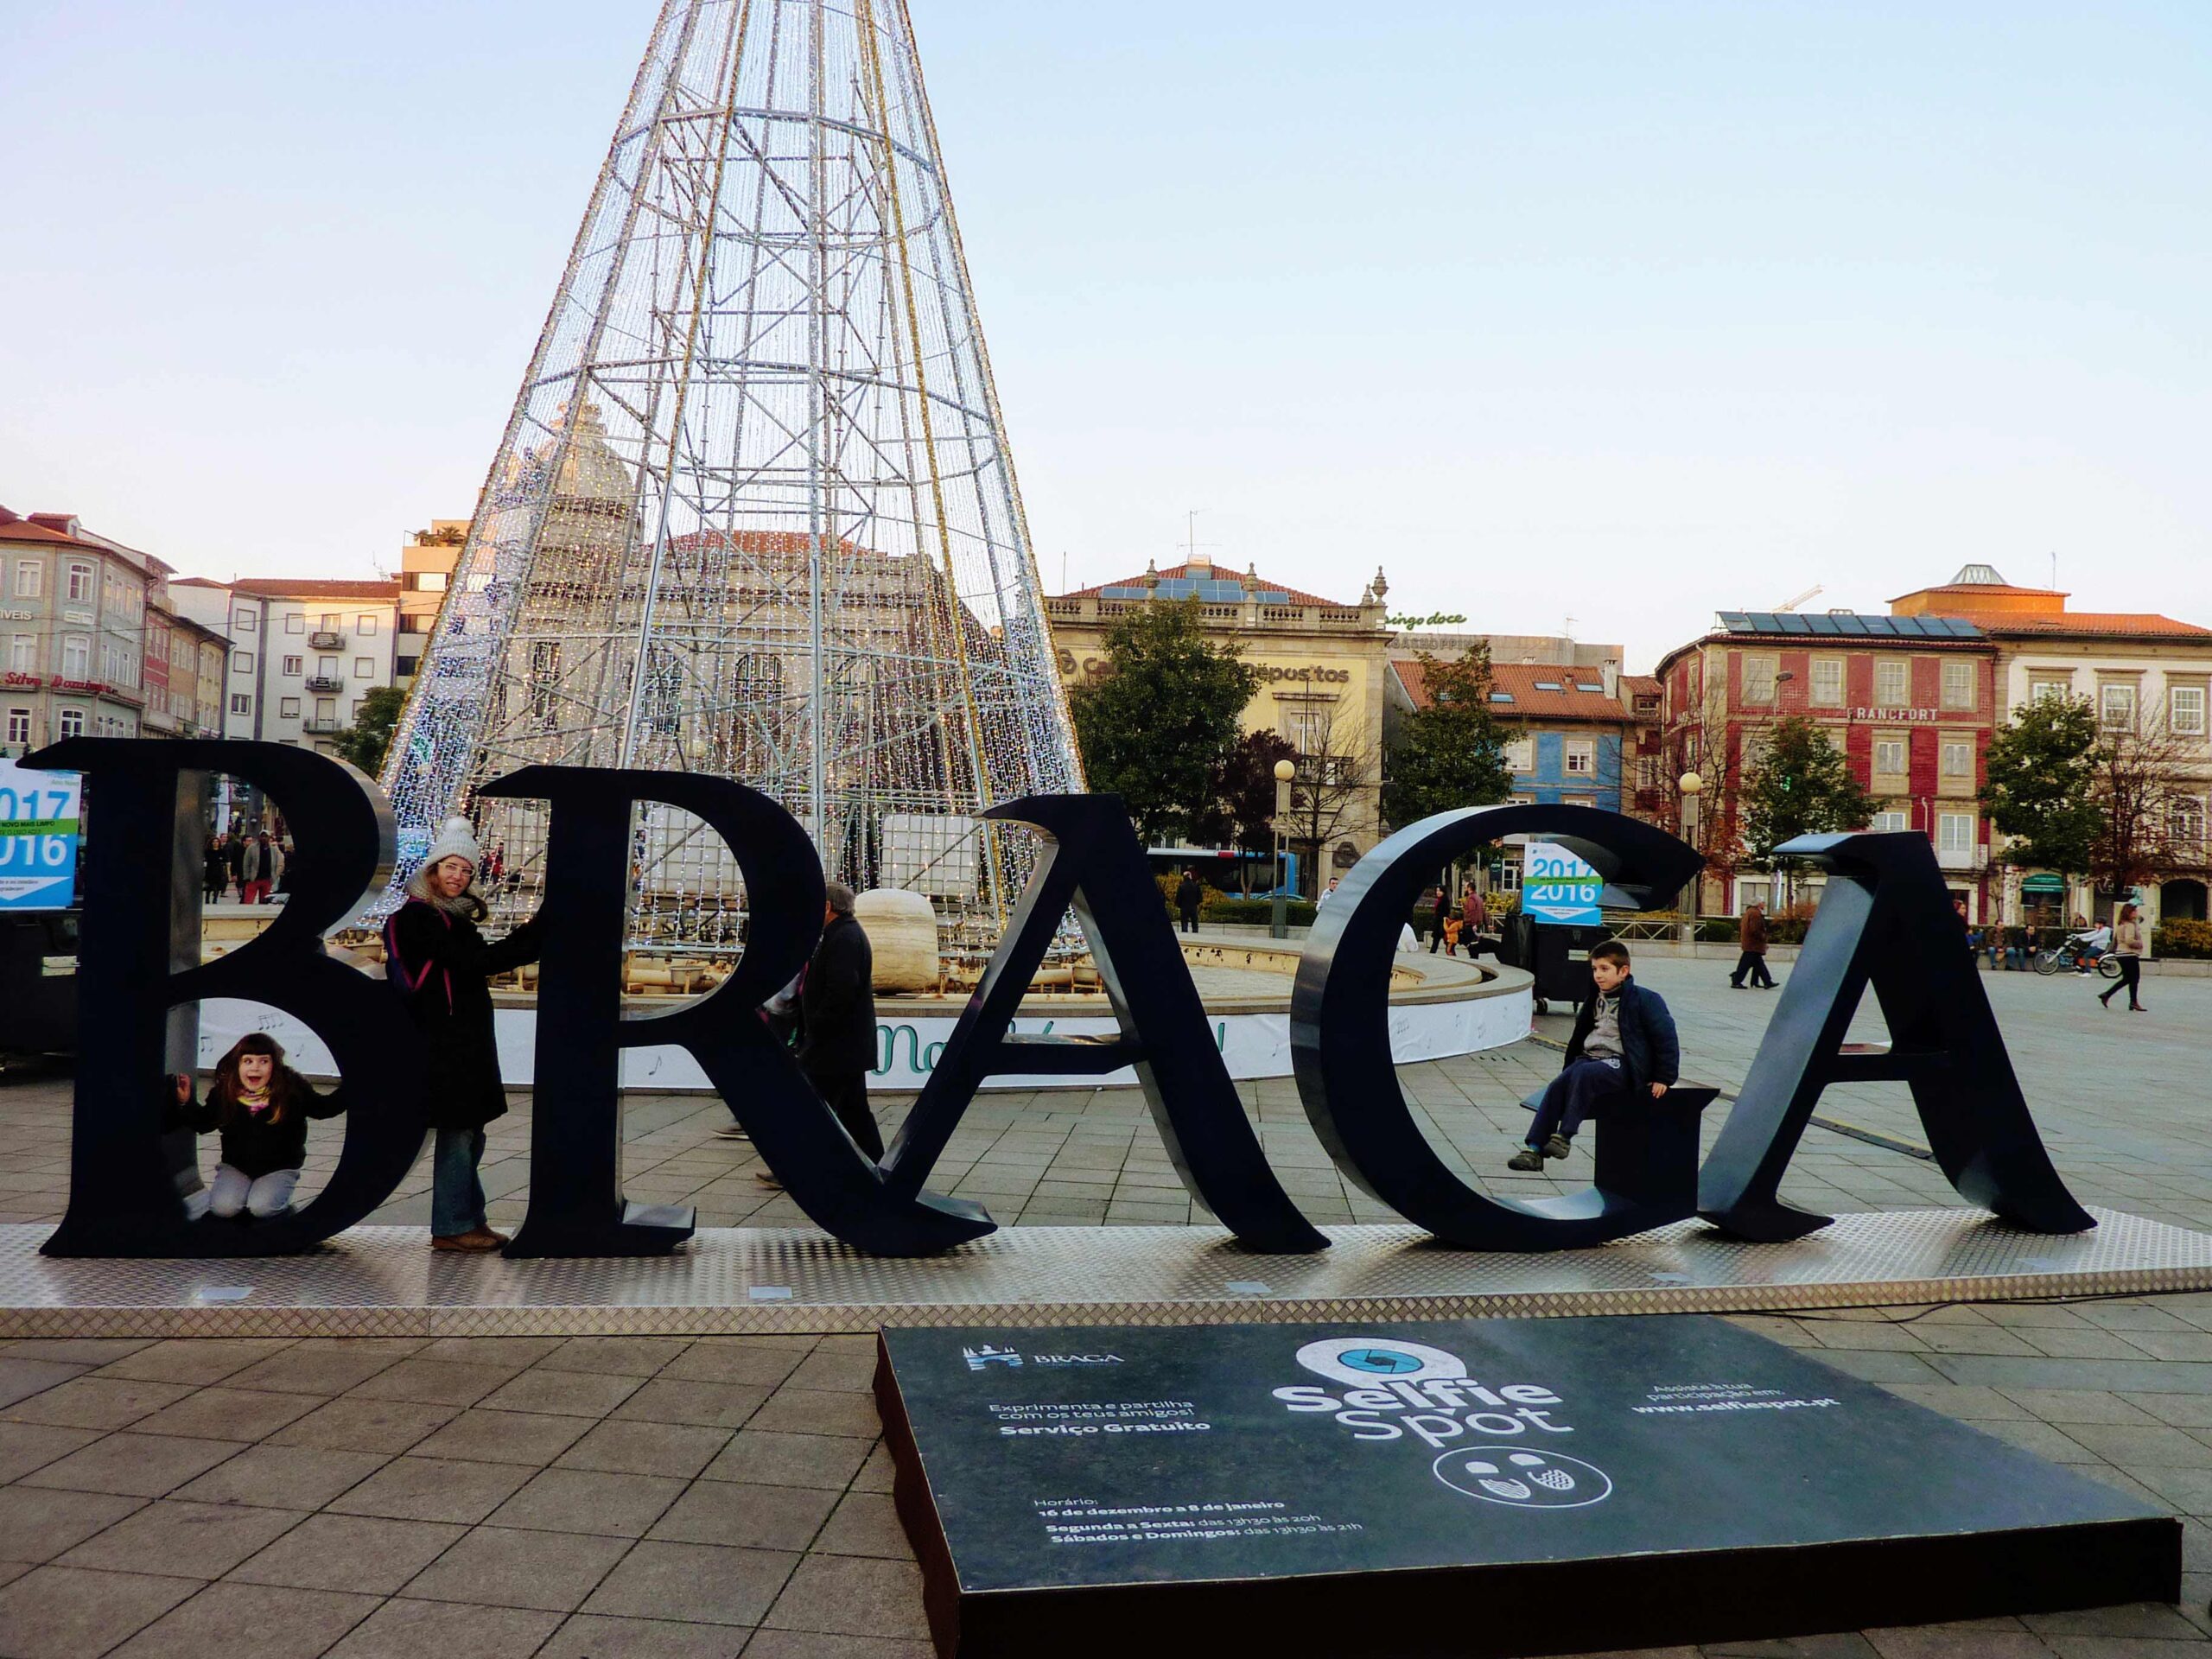 Braga. Plaça da Republica